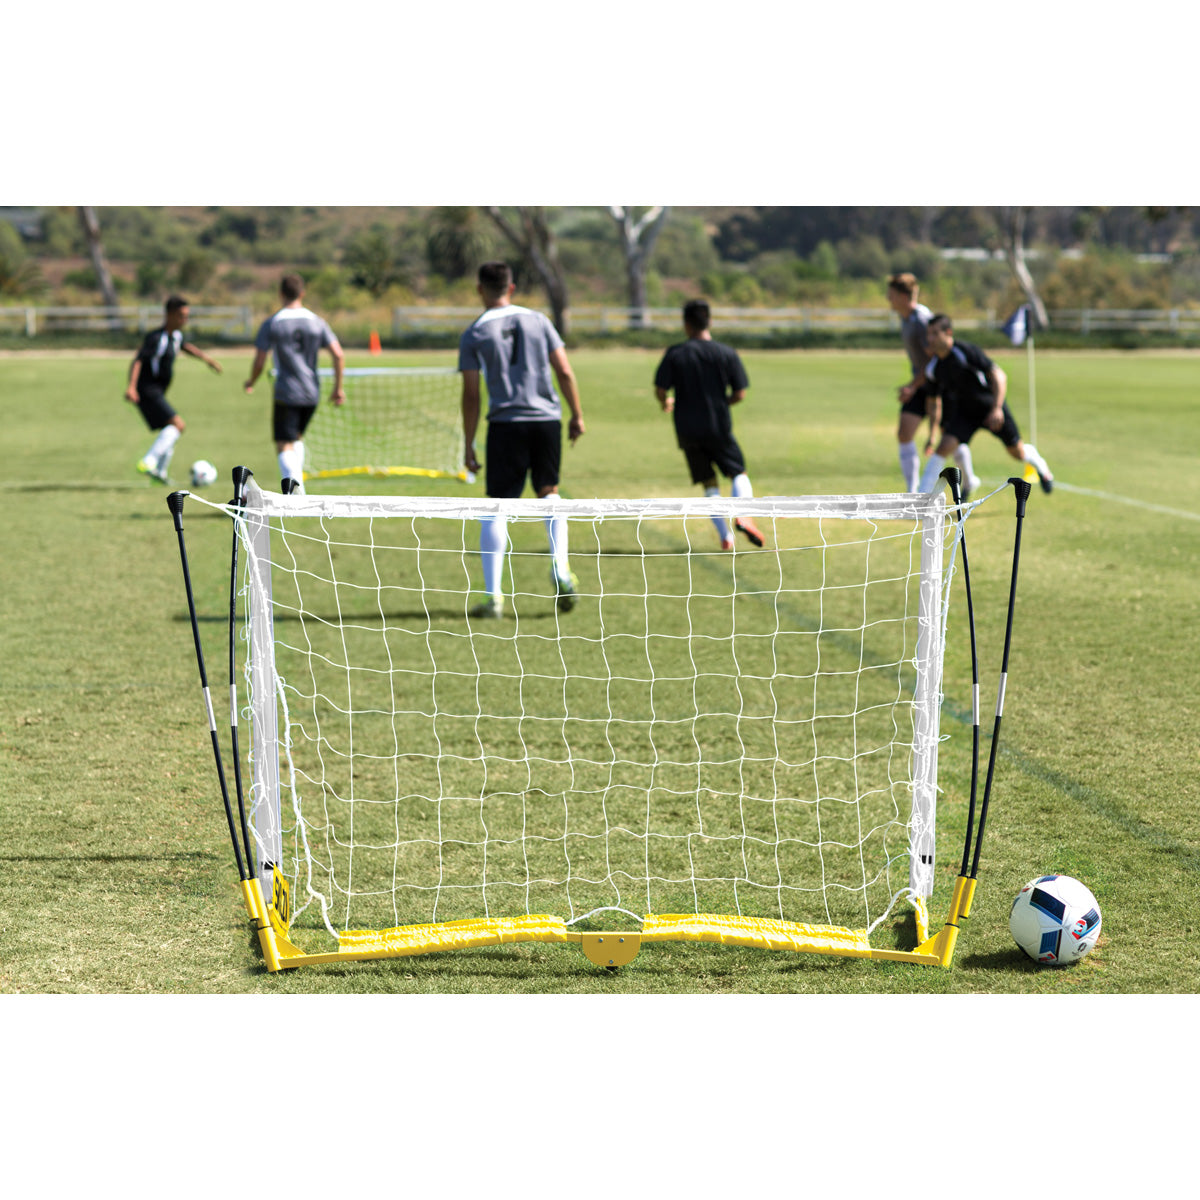 SKLZ Pro Training Soccer Goal -  6' x 4' SKLZ